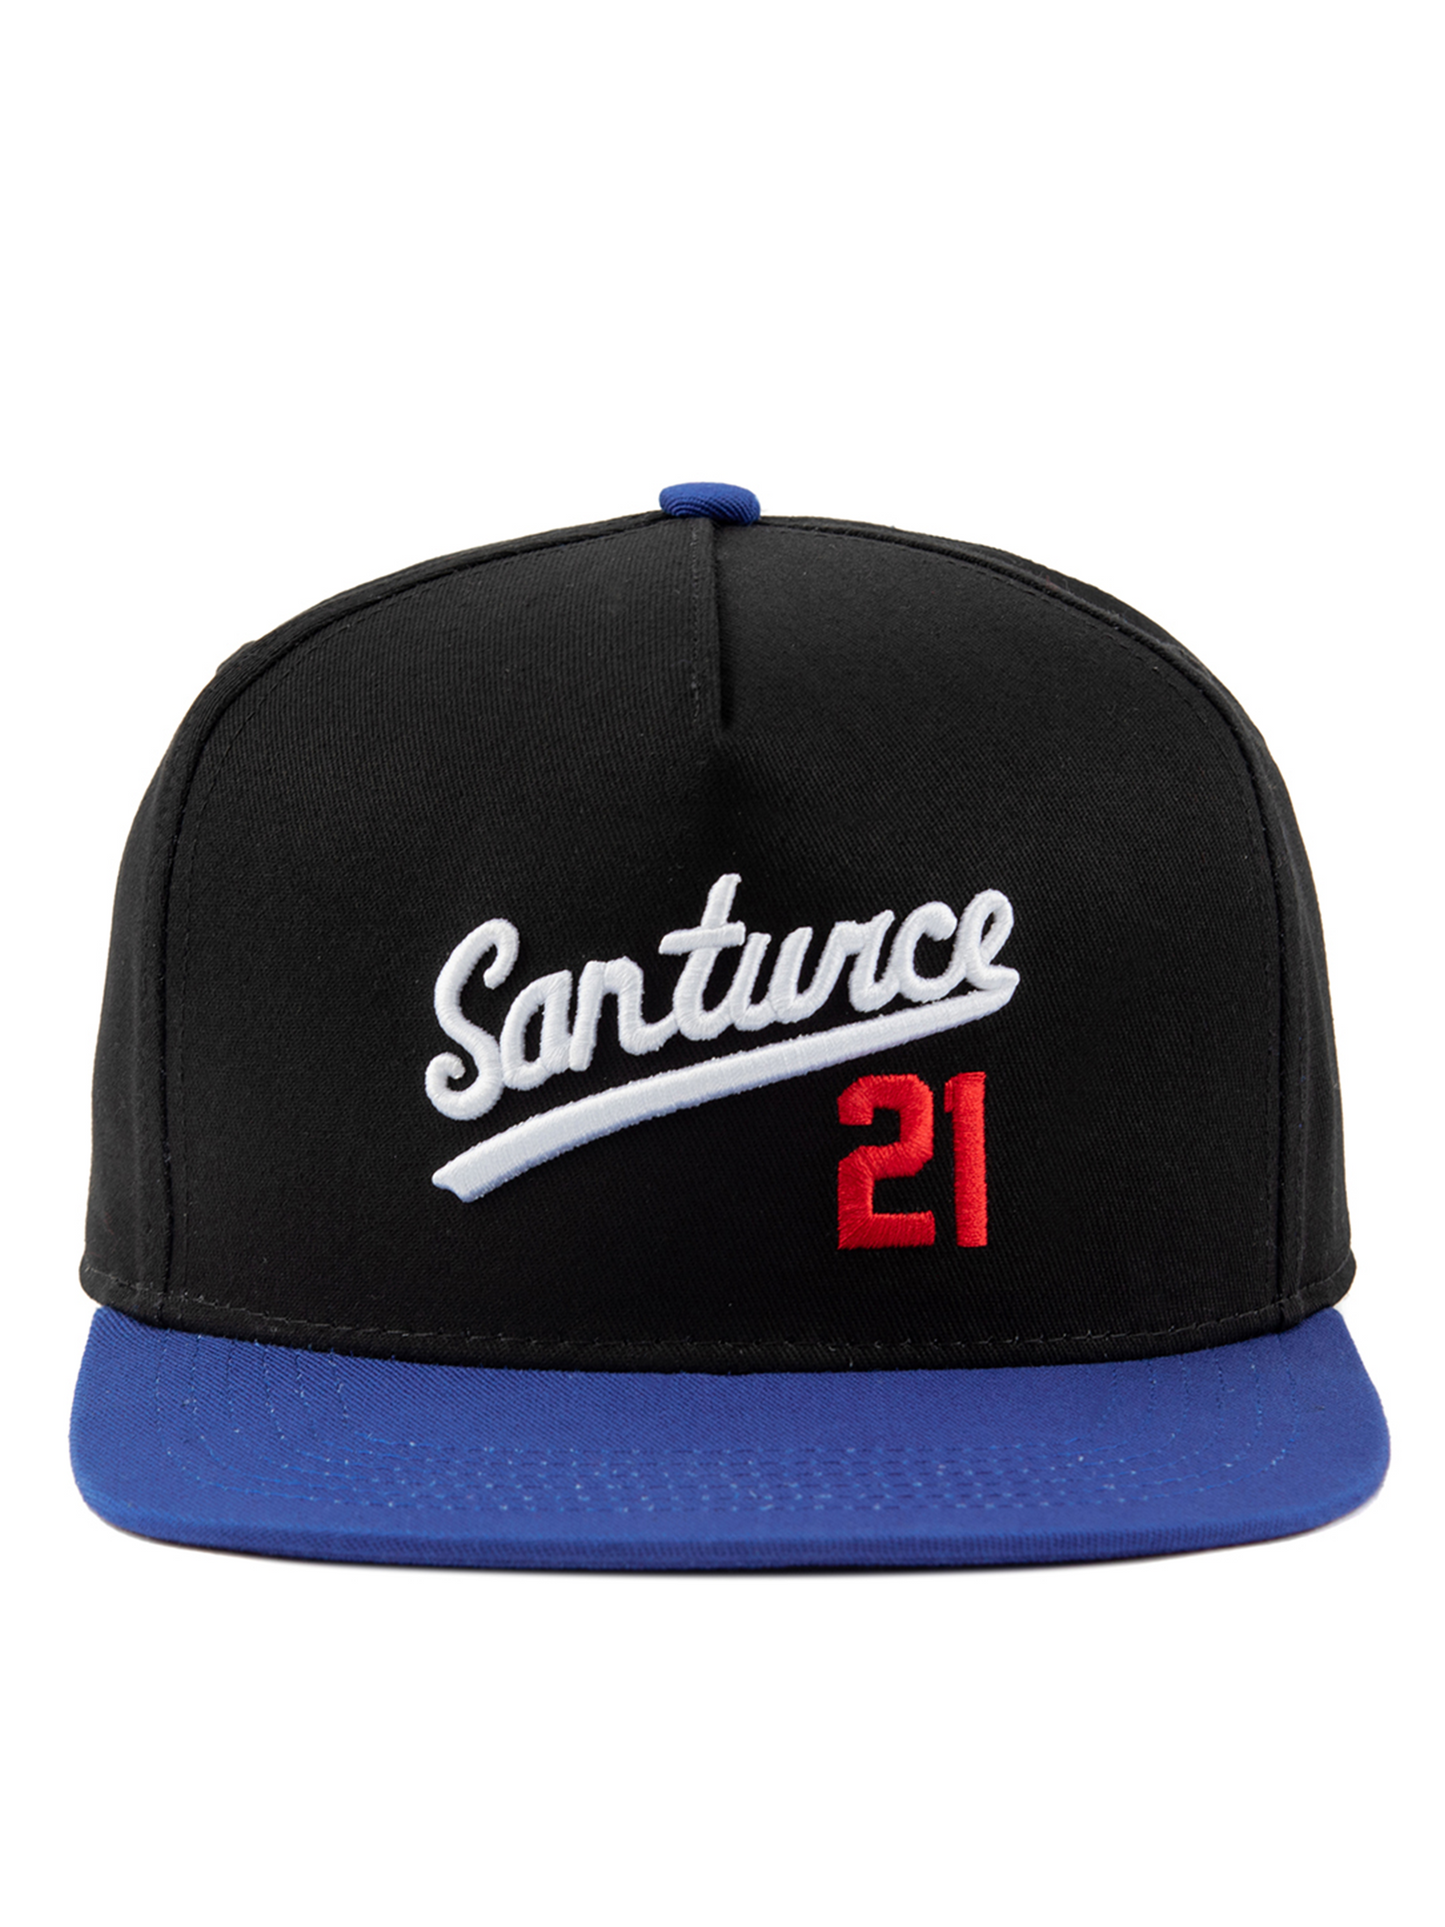 Santurce 21- Snapback Cap